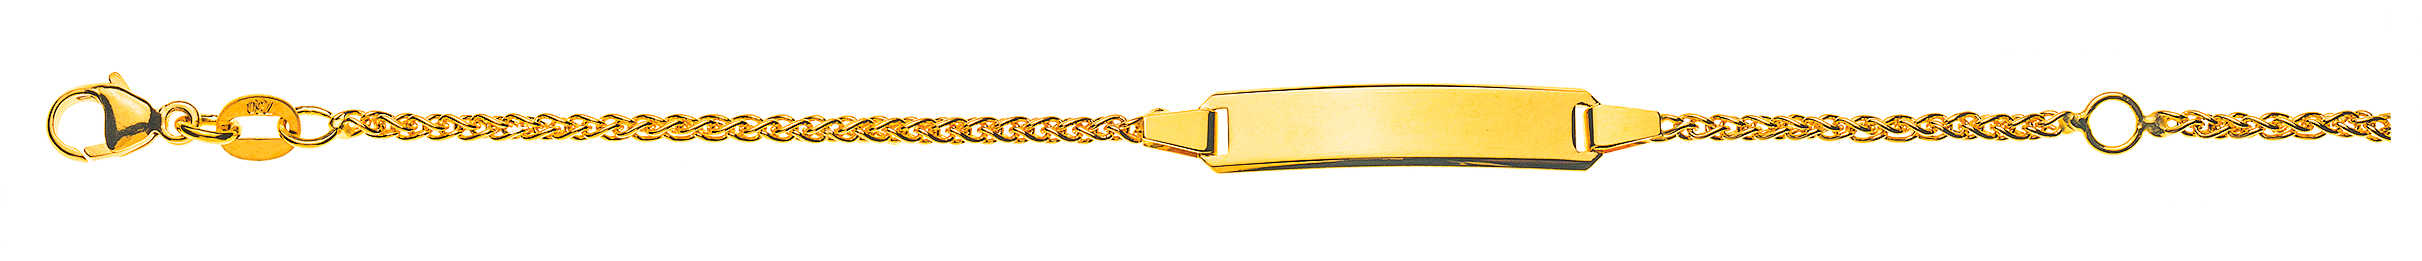 Bebe Bracelet Zopf Gelbgold 750 Kt.